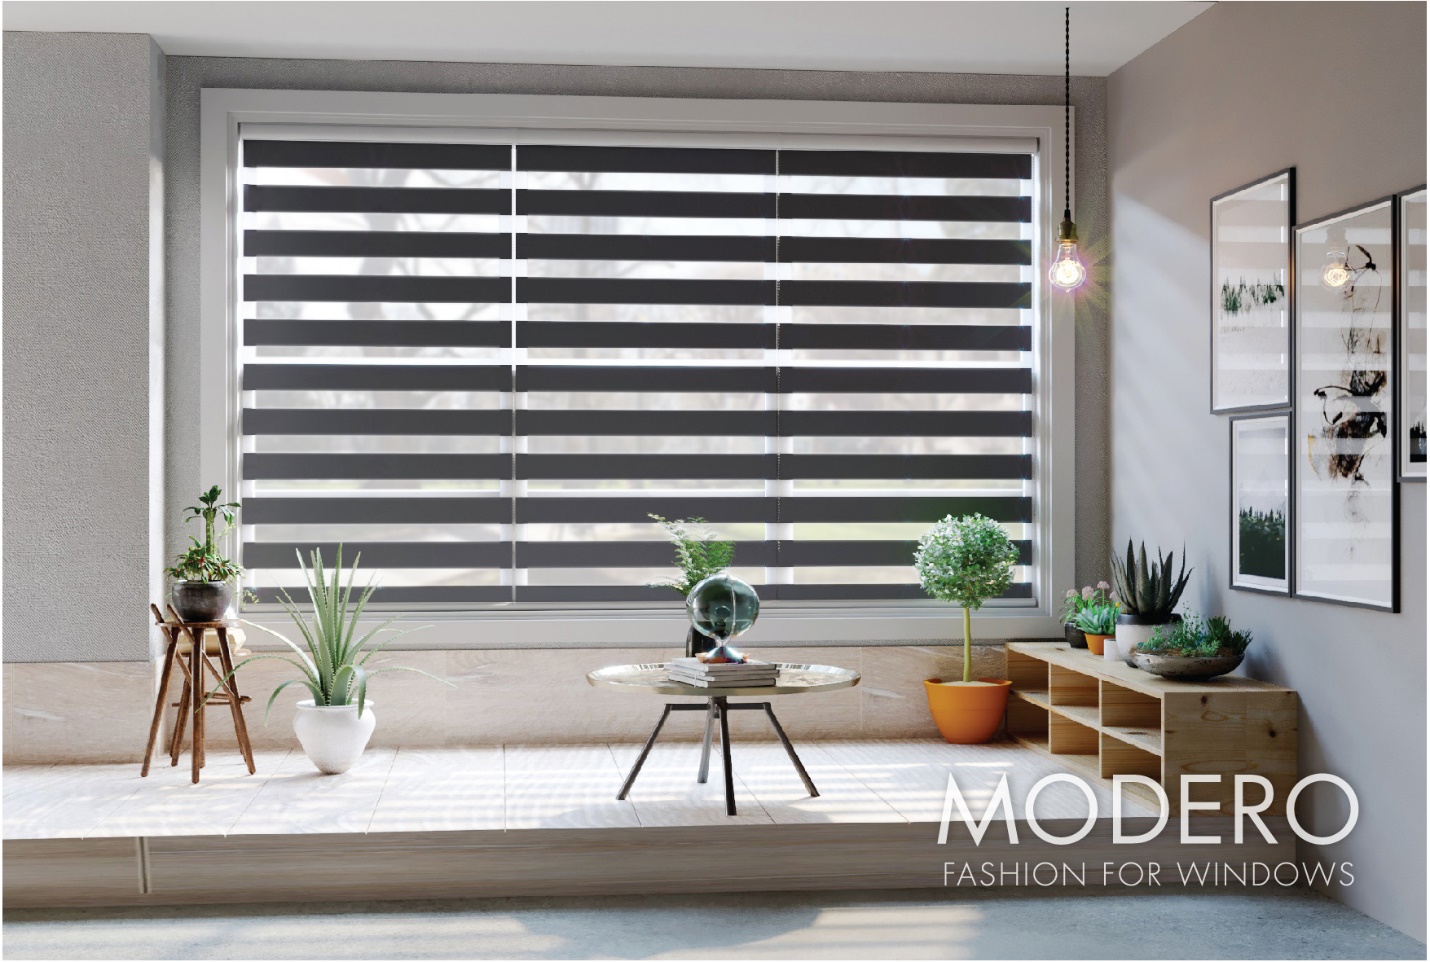 ​Rèm combi sở hữu đầy đủ chức năng của chiếc rèm cửa hiện đại như cản ánh sáng, cản nhiệt, đảm bảo không gian riêng tư cho khách hàng.